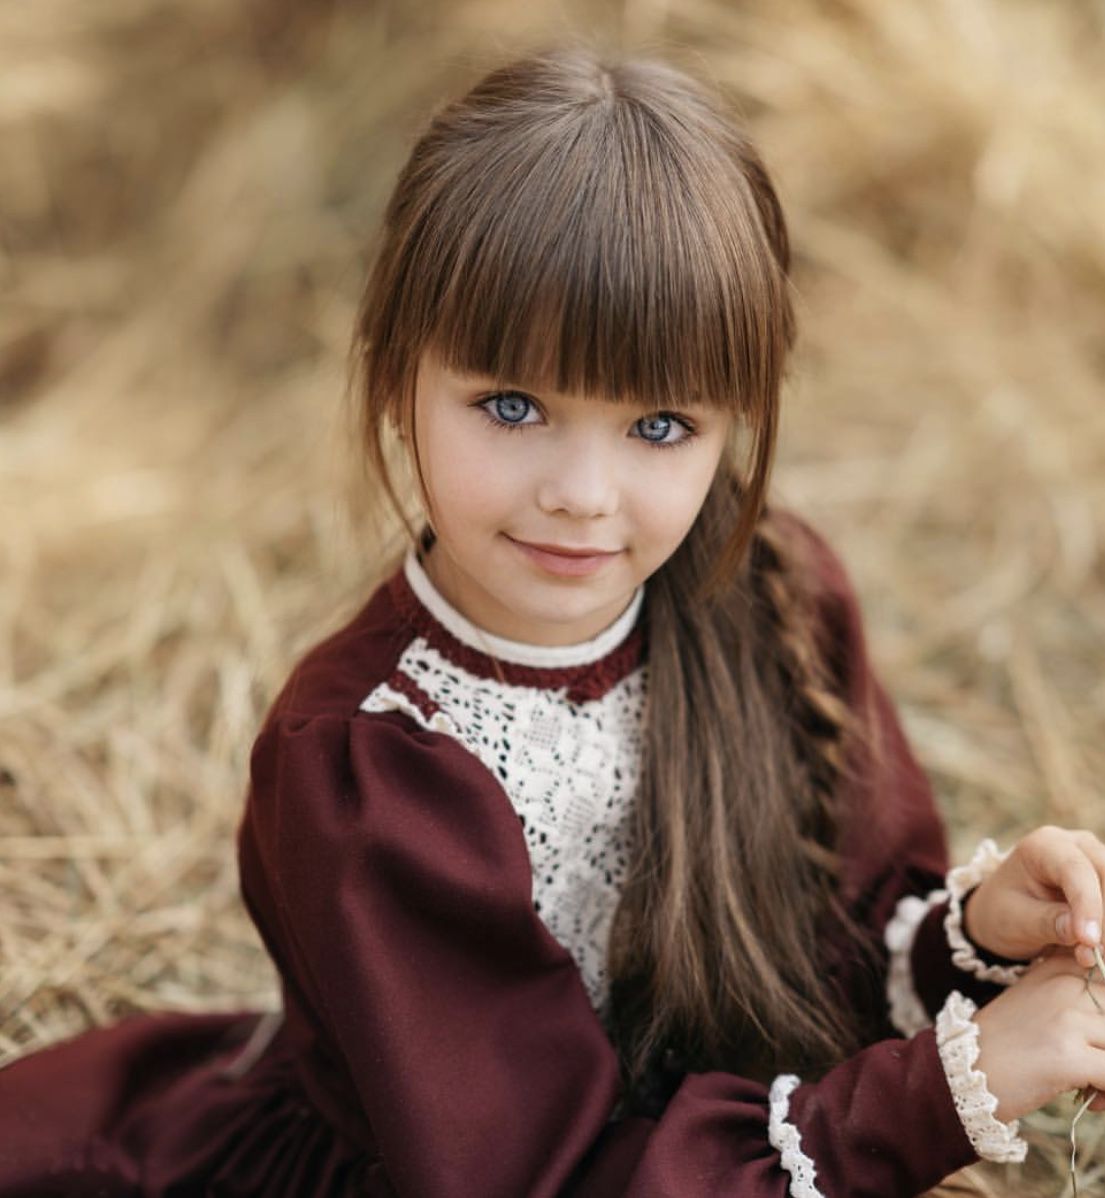 أجمل طفلة وأصغر موديل في العالم “سبحان الخالق” 40 صورة مجلة الجرس